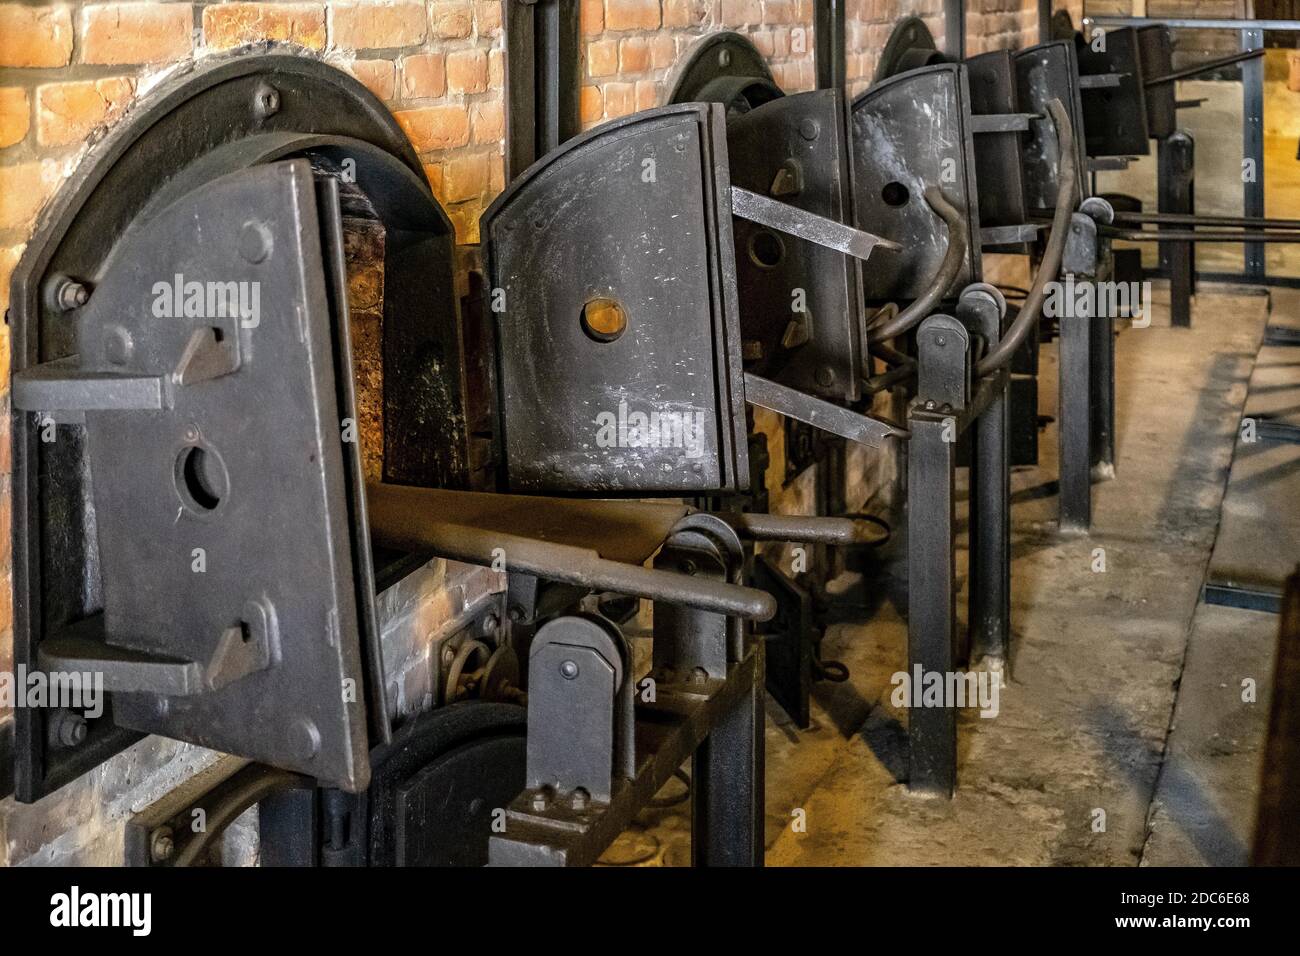 Lublin, Lubelskie / Polonia - 2019/08/17: Hornos de crematorio reconstruidos del campo de concentración y exterminio de los nazis Majdanek KL Lublin - Konzentrat Foto de stock